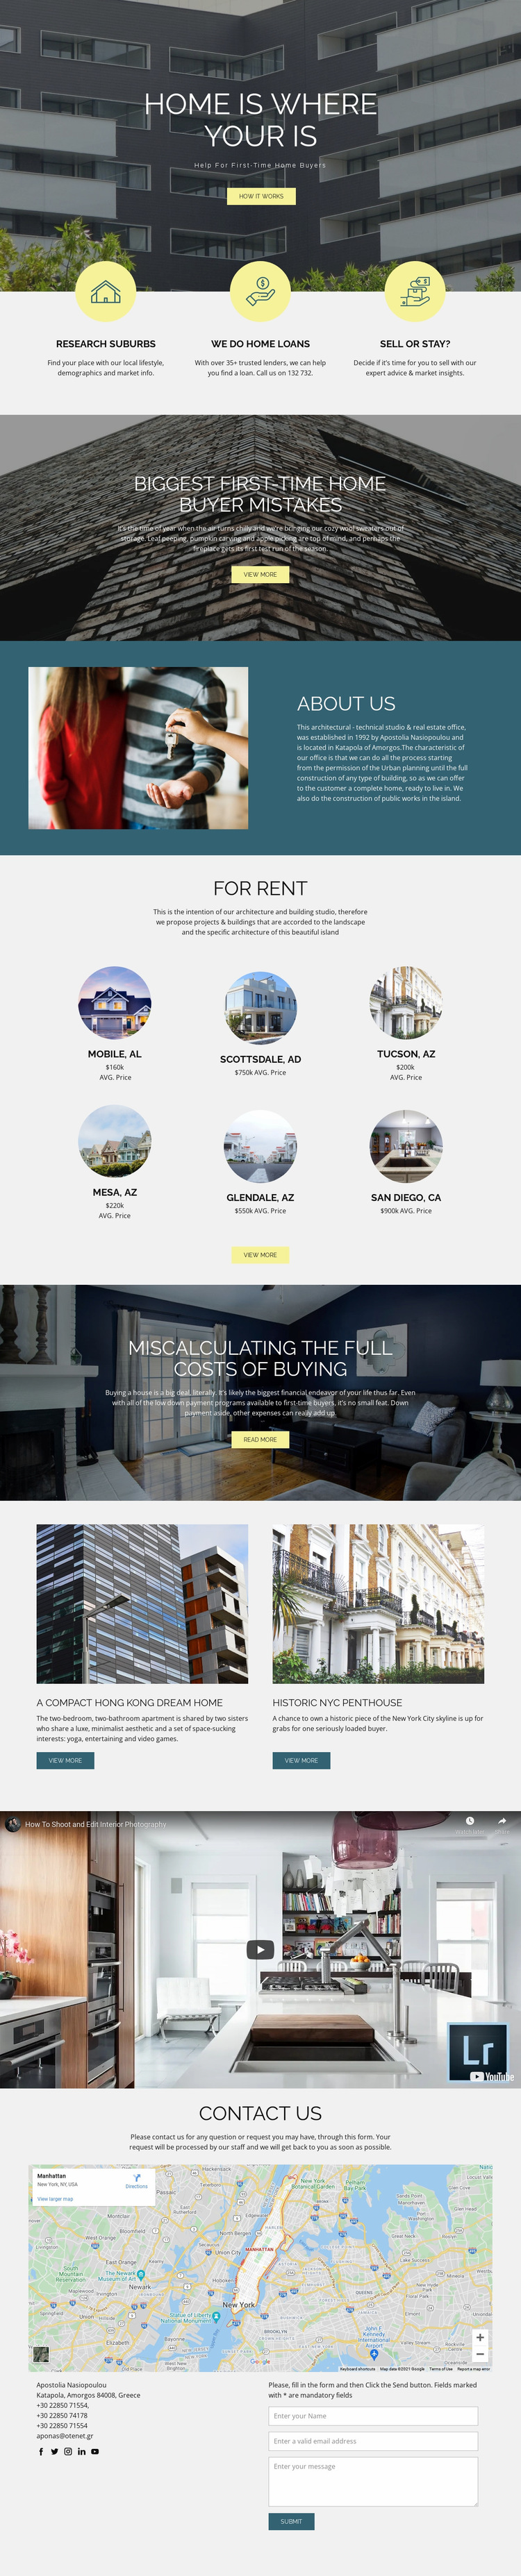 Home real estate Website Builder Templates